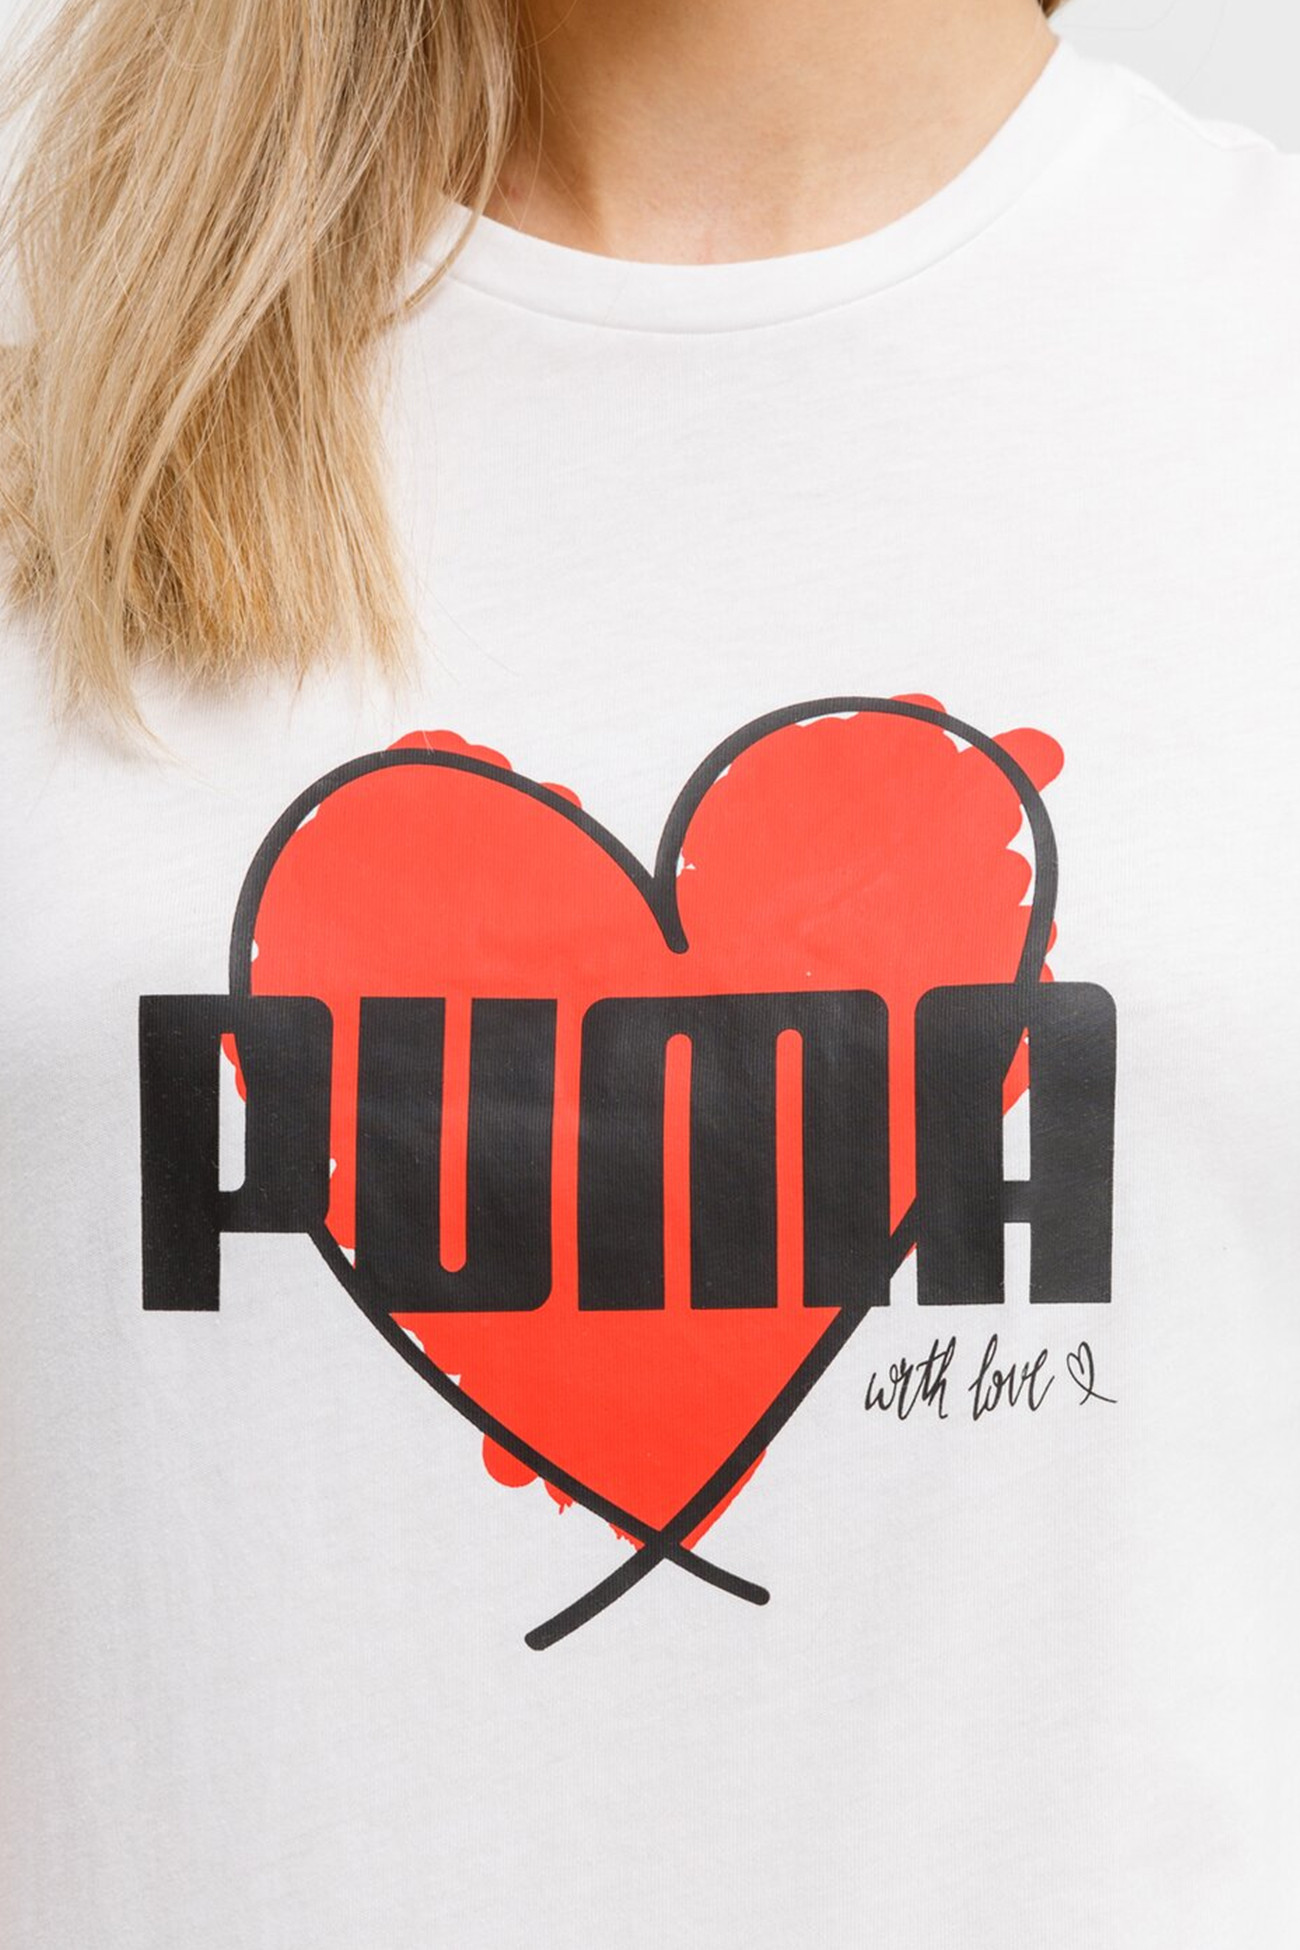 Футболка жіноча Puma Heart Tee біла 58789702 